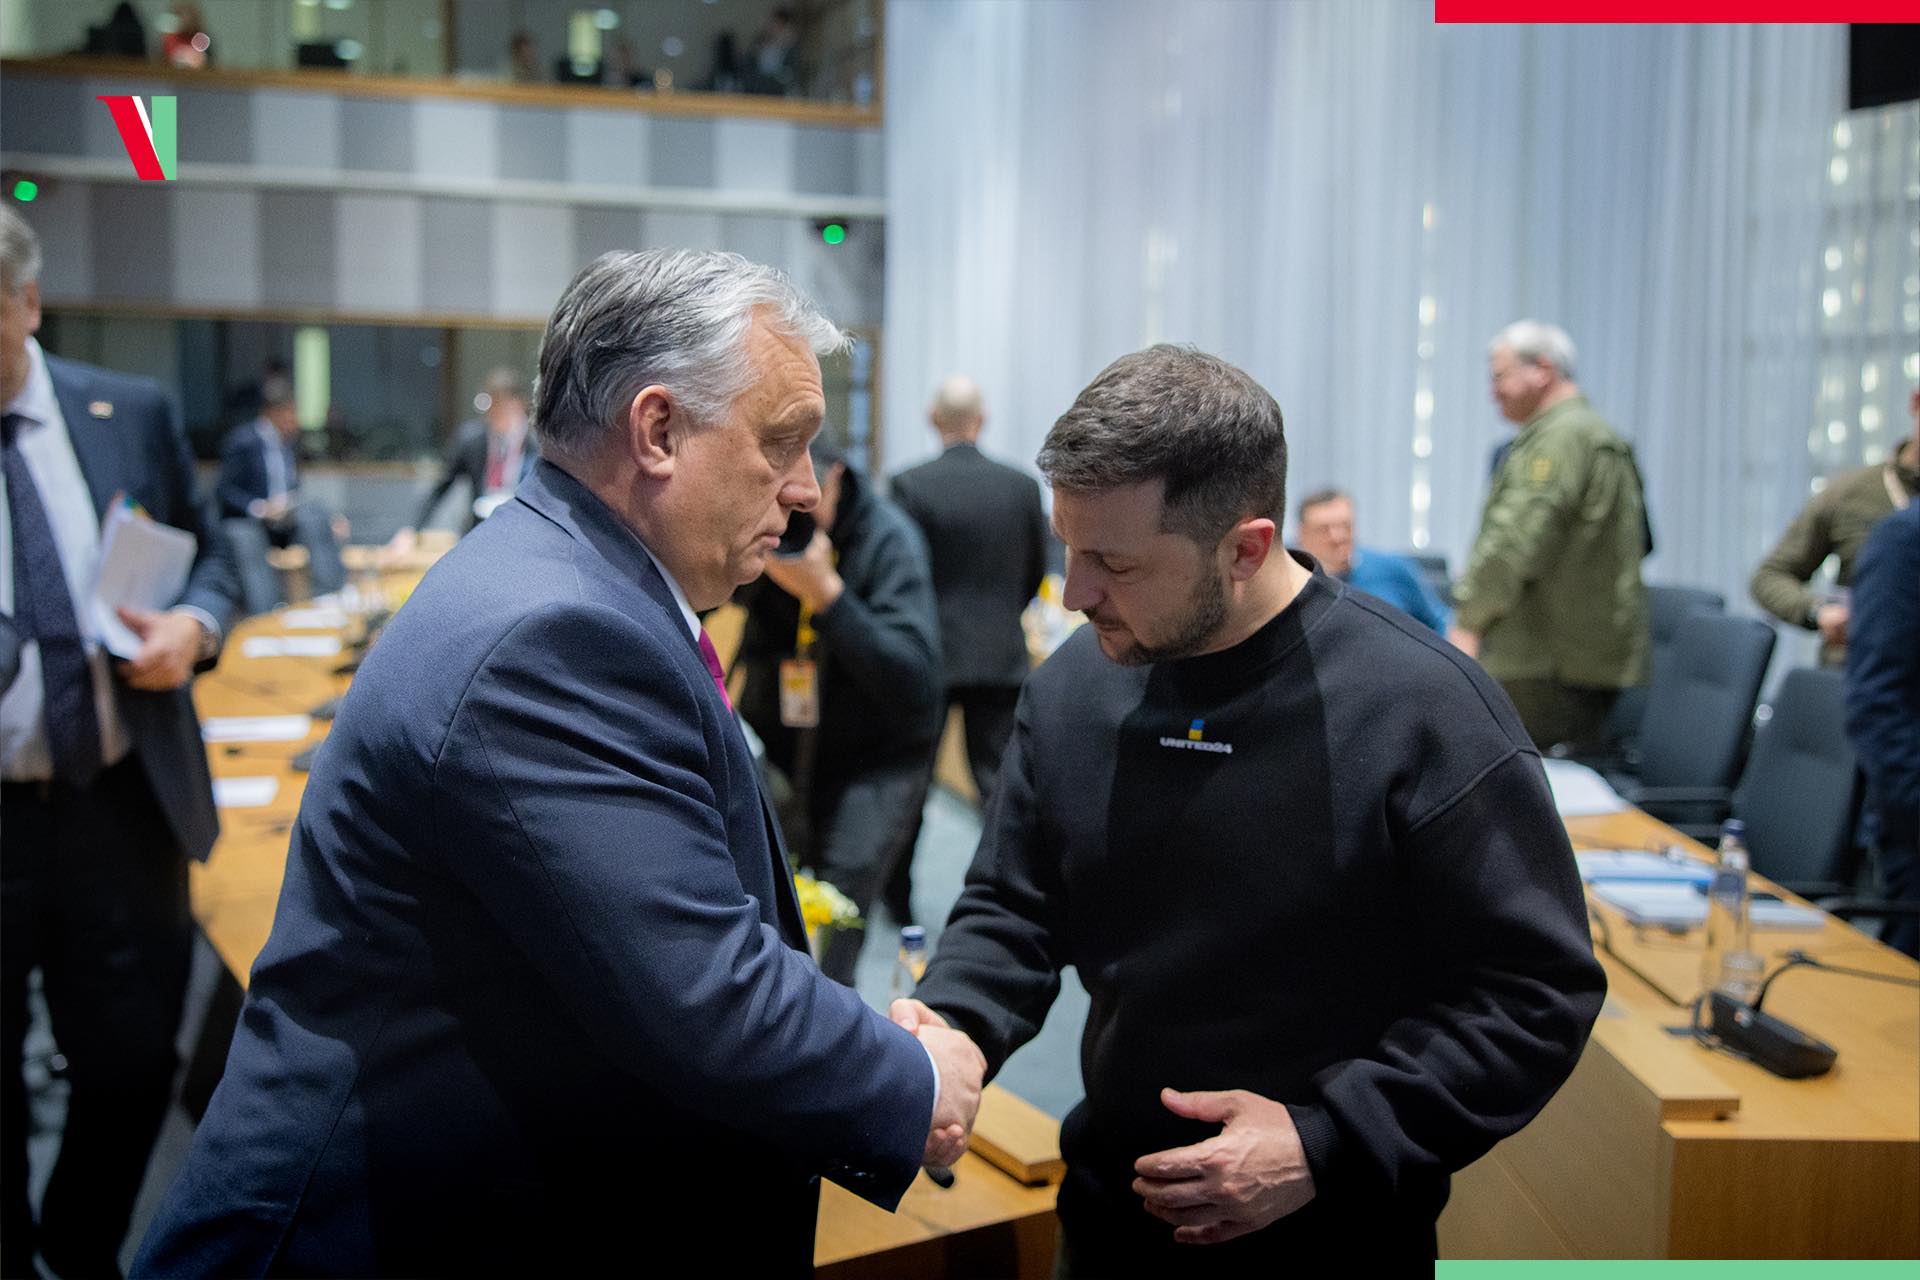 Orbán Meets Zelensky